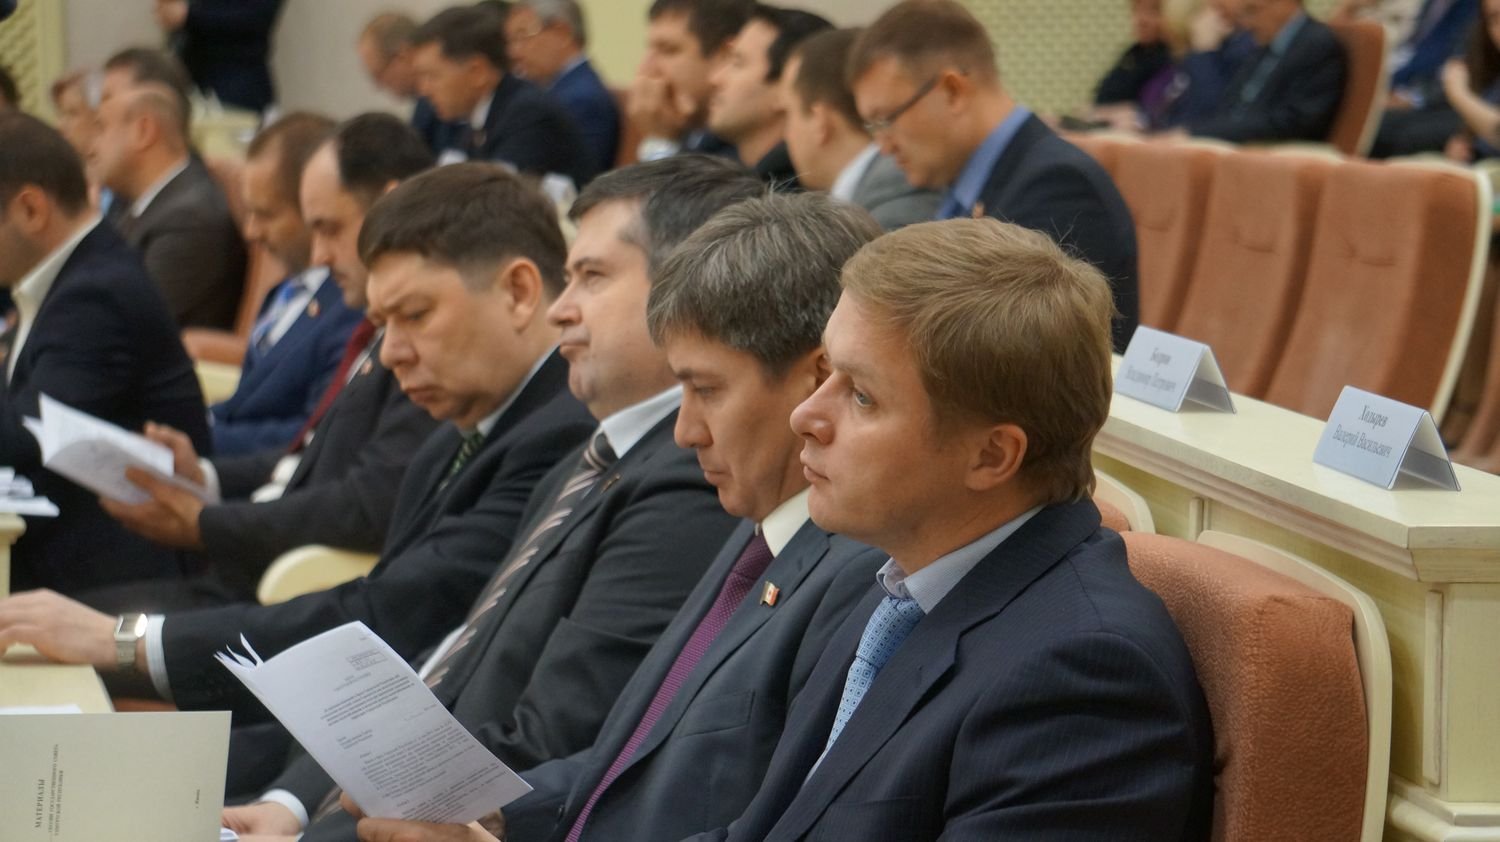 Алексей Рыков предложил передать полномочия комиссии фракции ЕР. Фото ©День.org